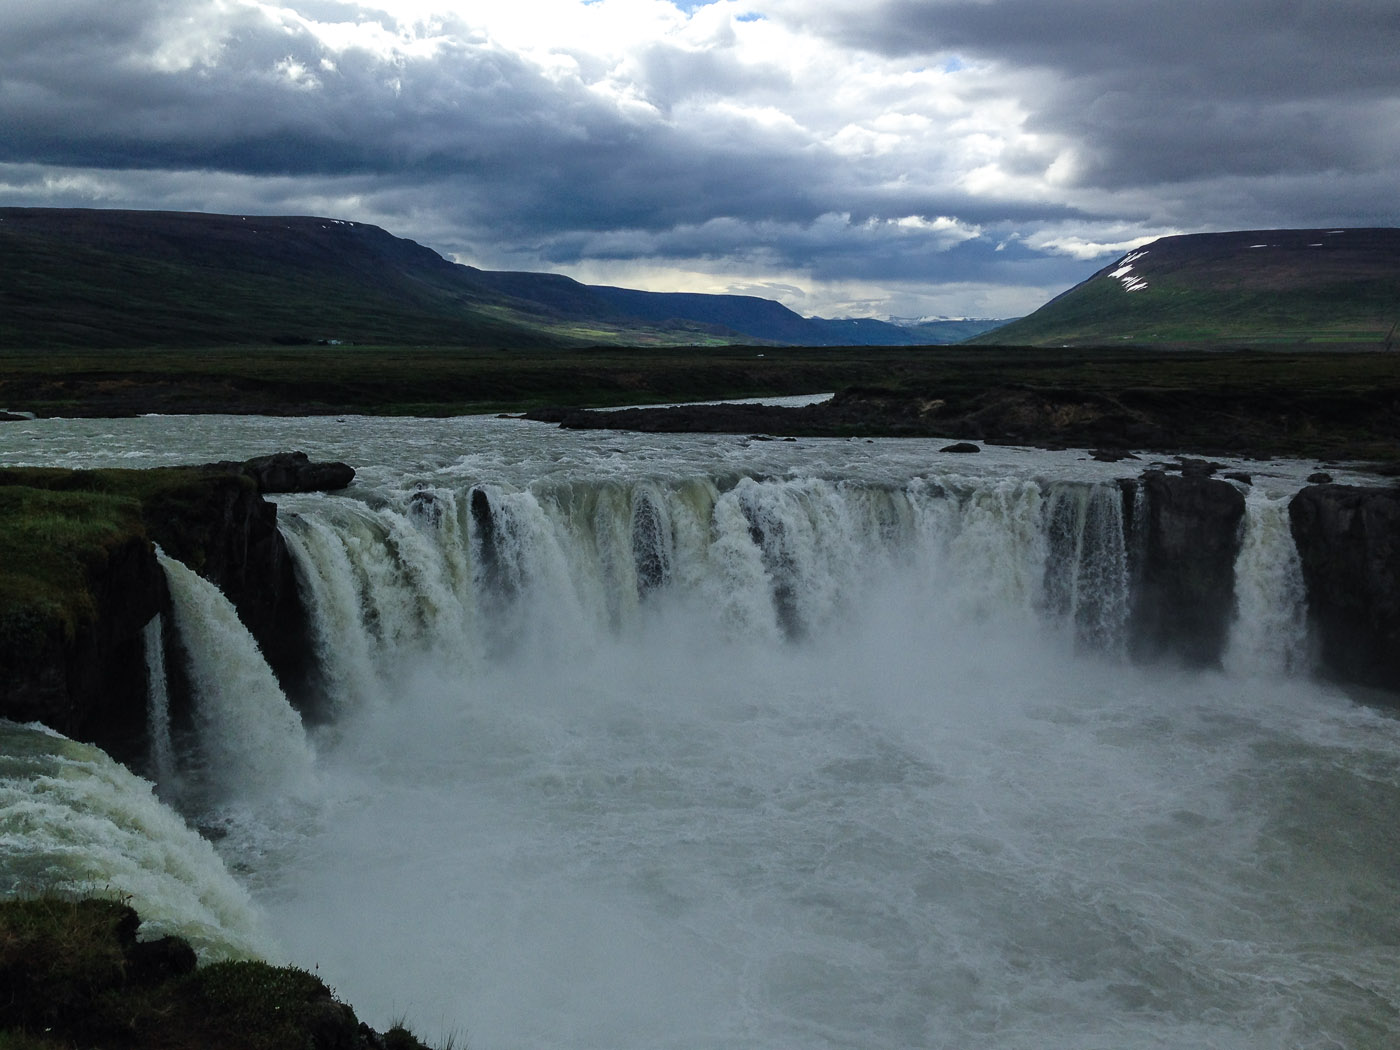 Northern Iceland - Back to Svarfaðardalur. On vacation. - <a href='https://en.wikipedia.org/wiki/Go%C3%B0afoss' target='_blank' class='linksnormal'>Waterfall Góðafoss</a>. I. (25 July 2014)